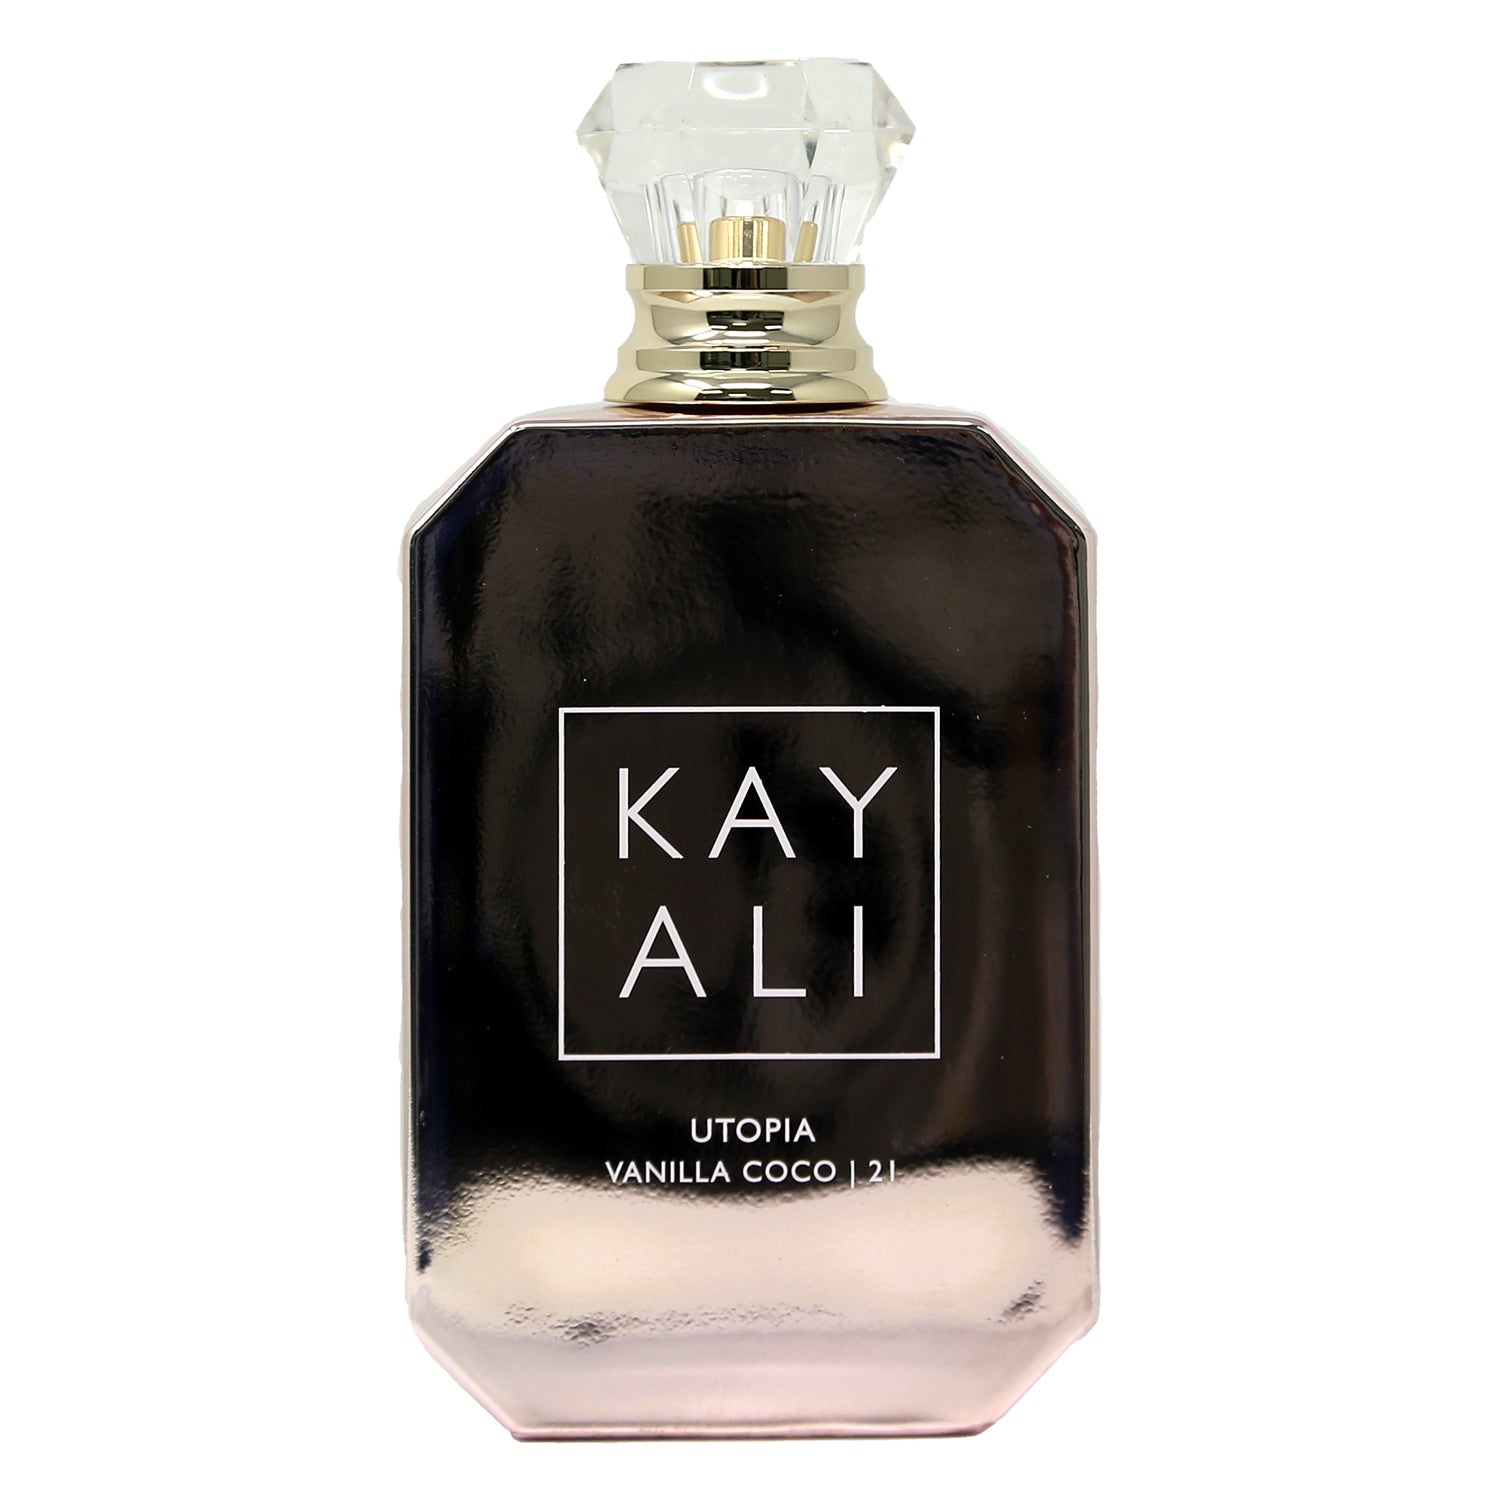 Kayali Utopia Vanilla Coco 21 Eau de Parfum Intense Unisex 2ml